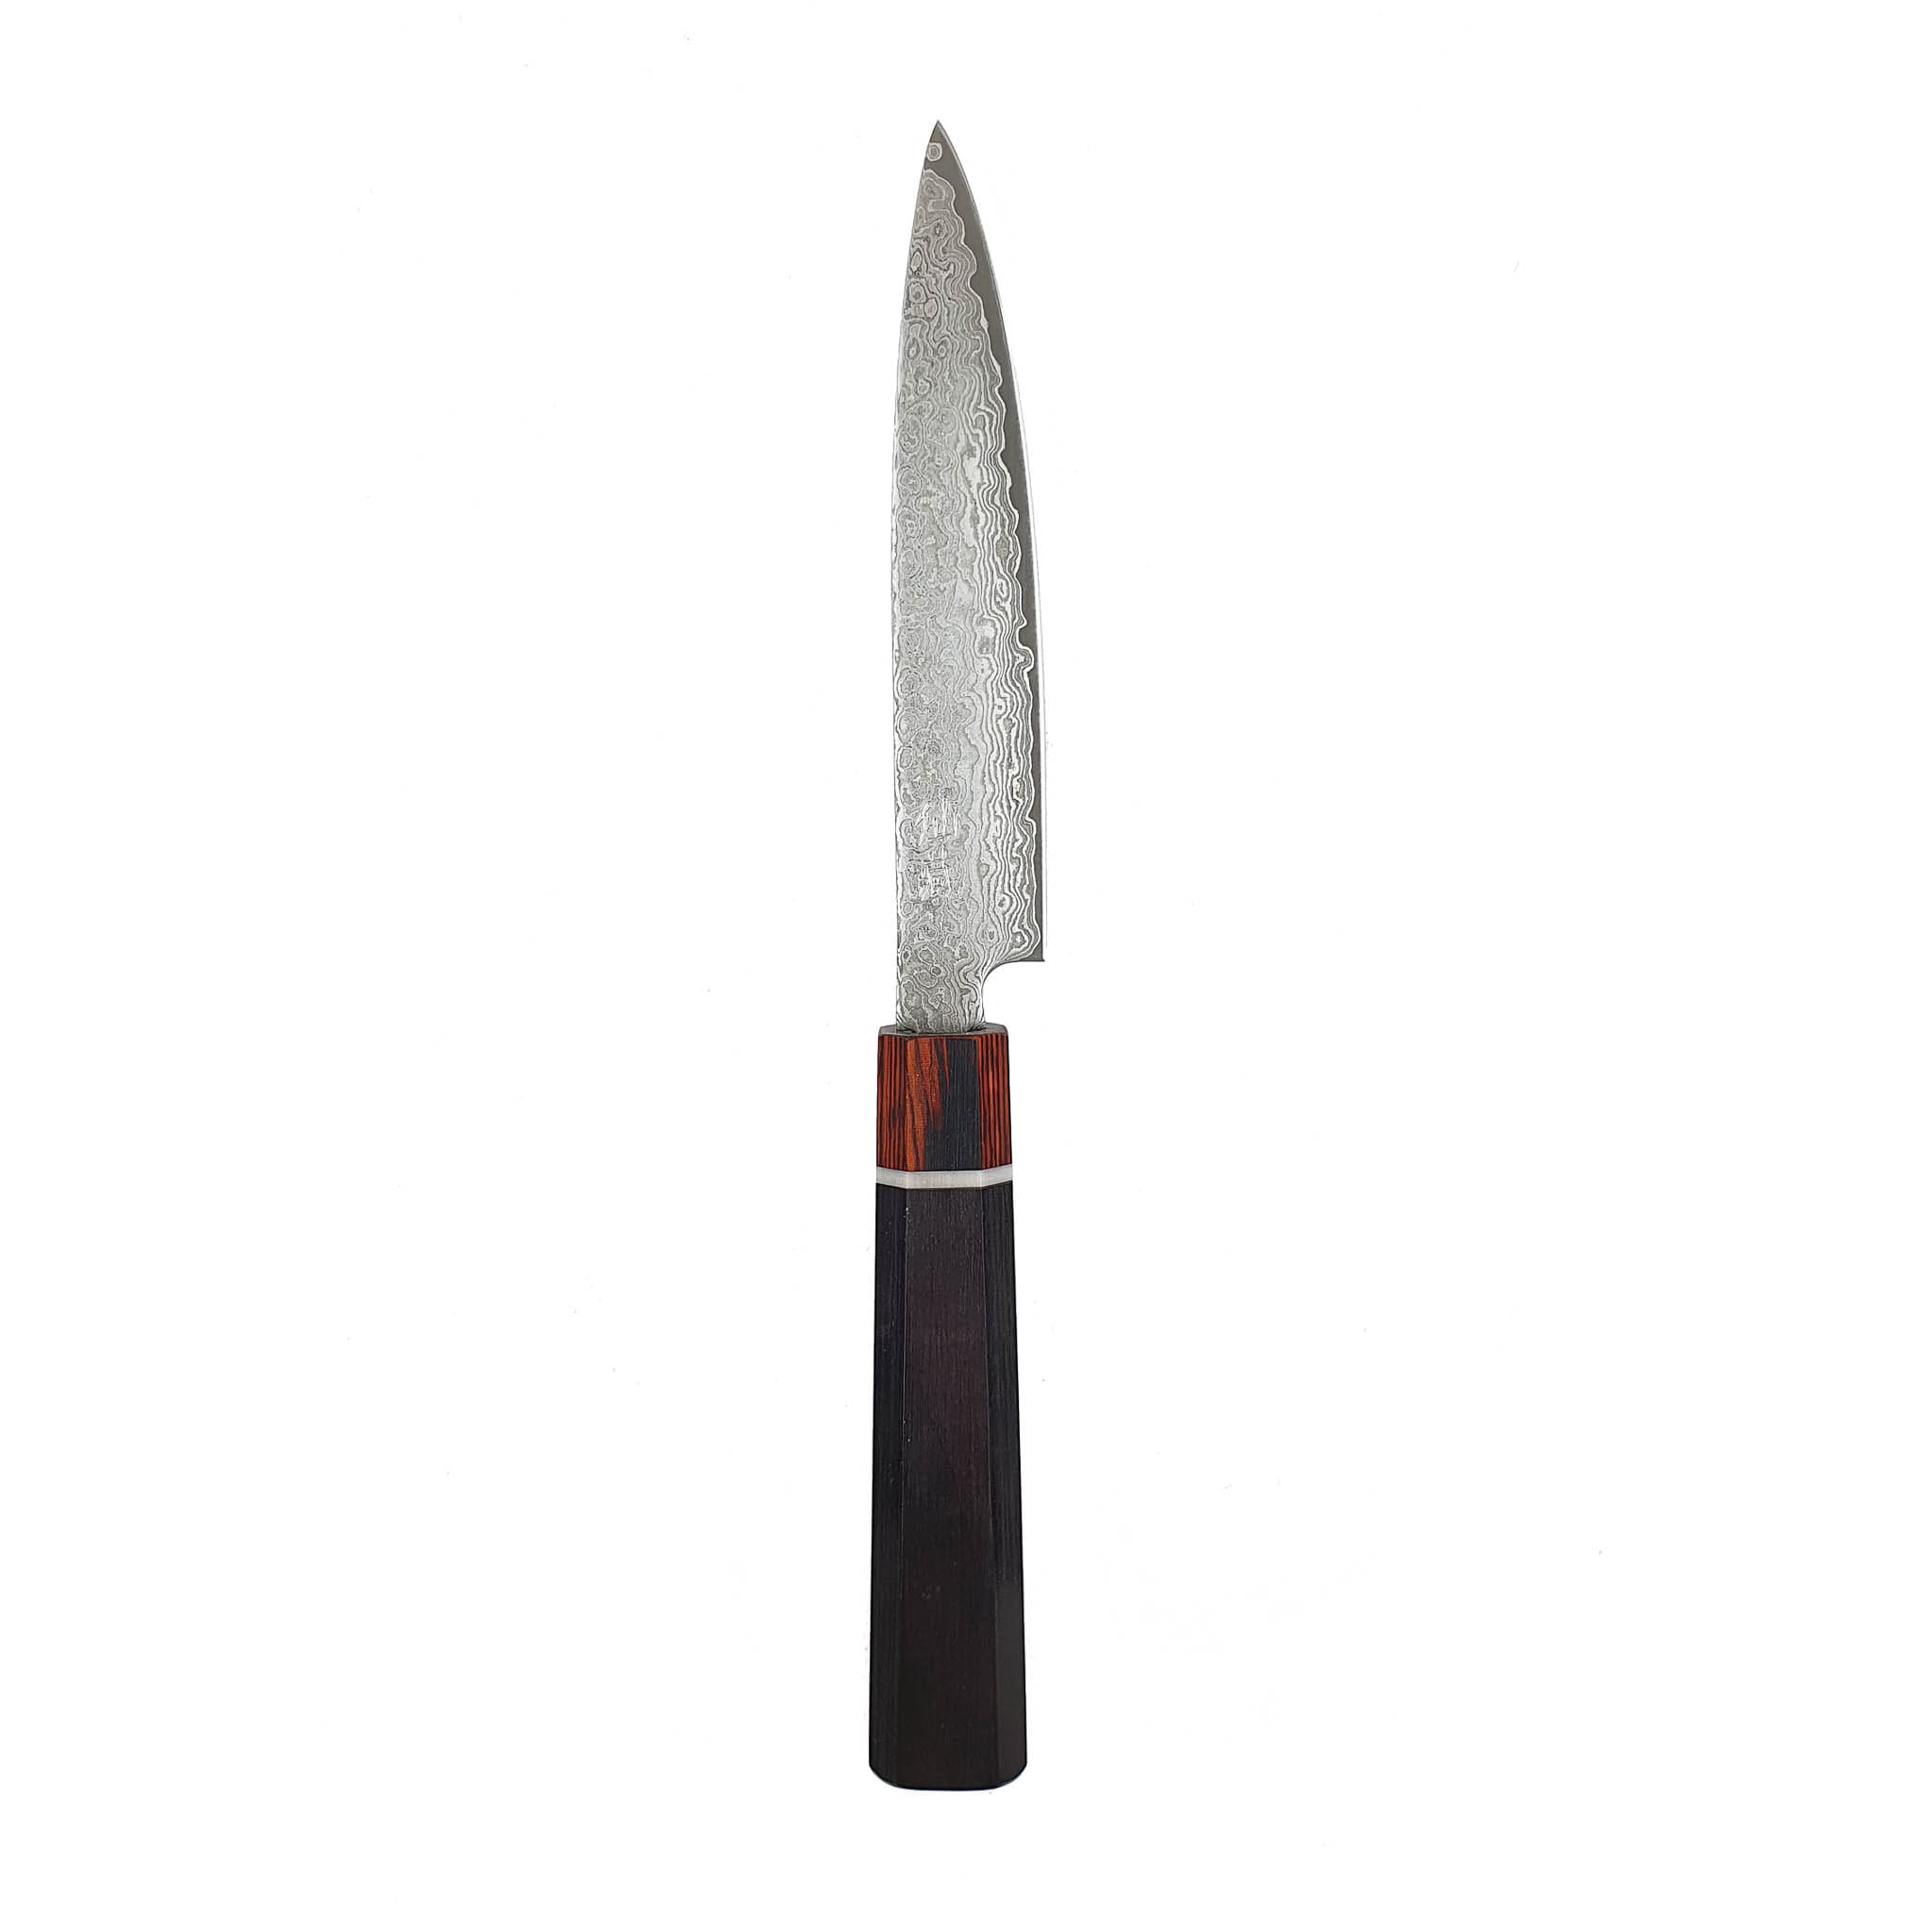 Yasuo Black Utility Knife, 12cm